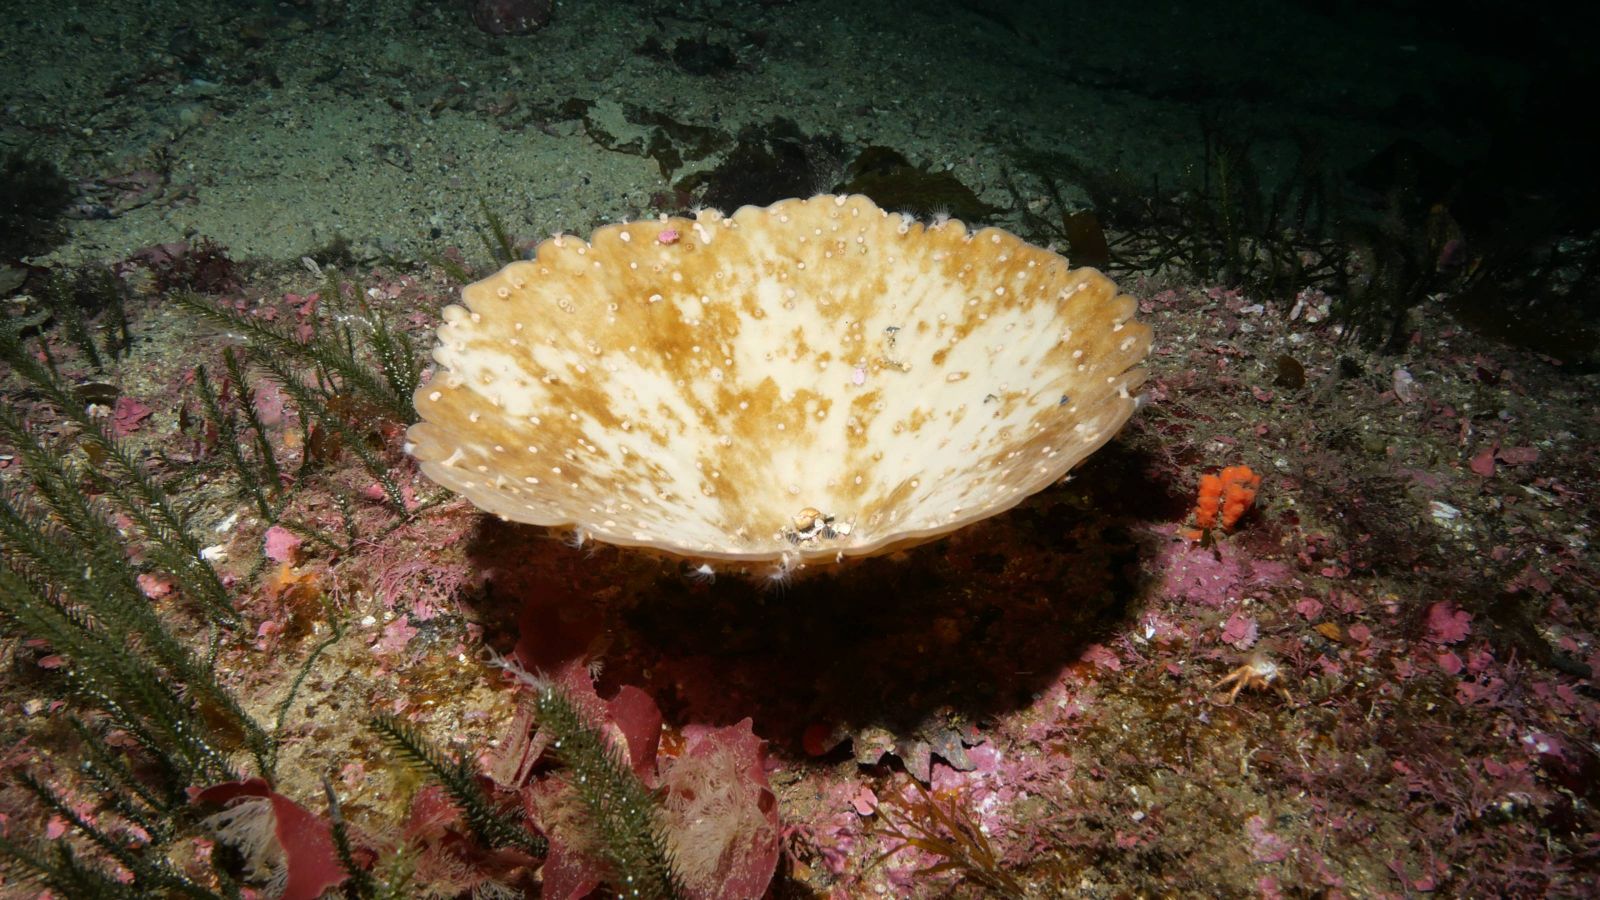 Bleached sponge on the sea floor.